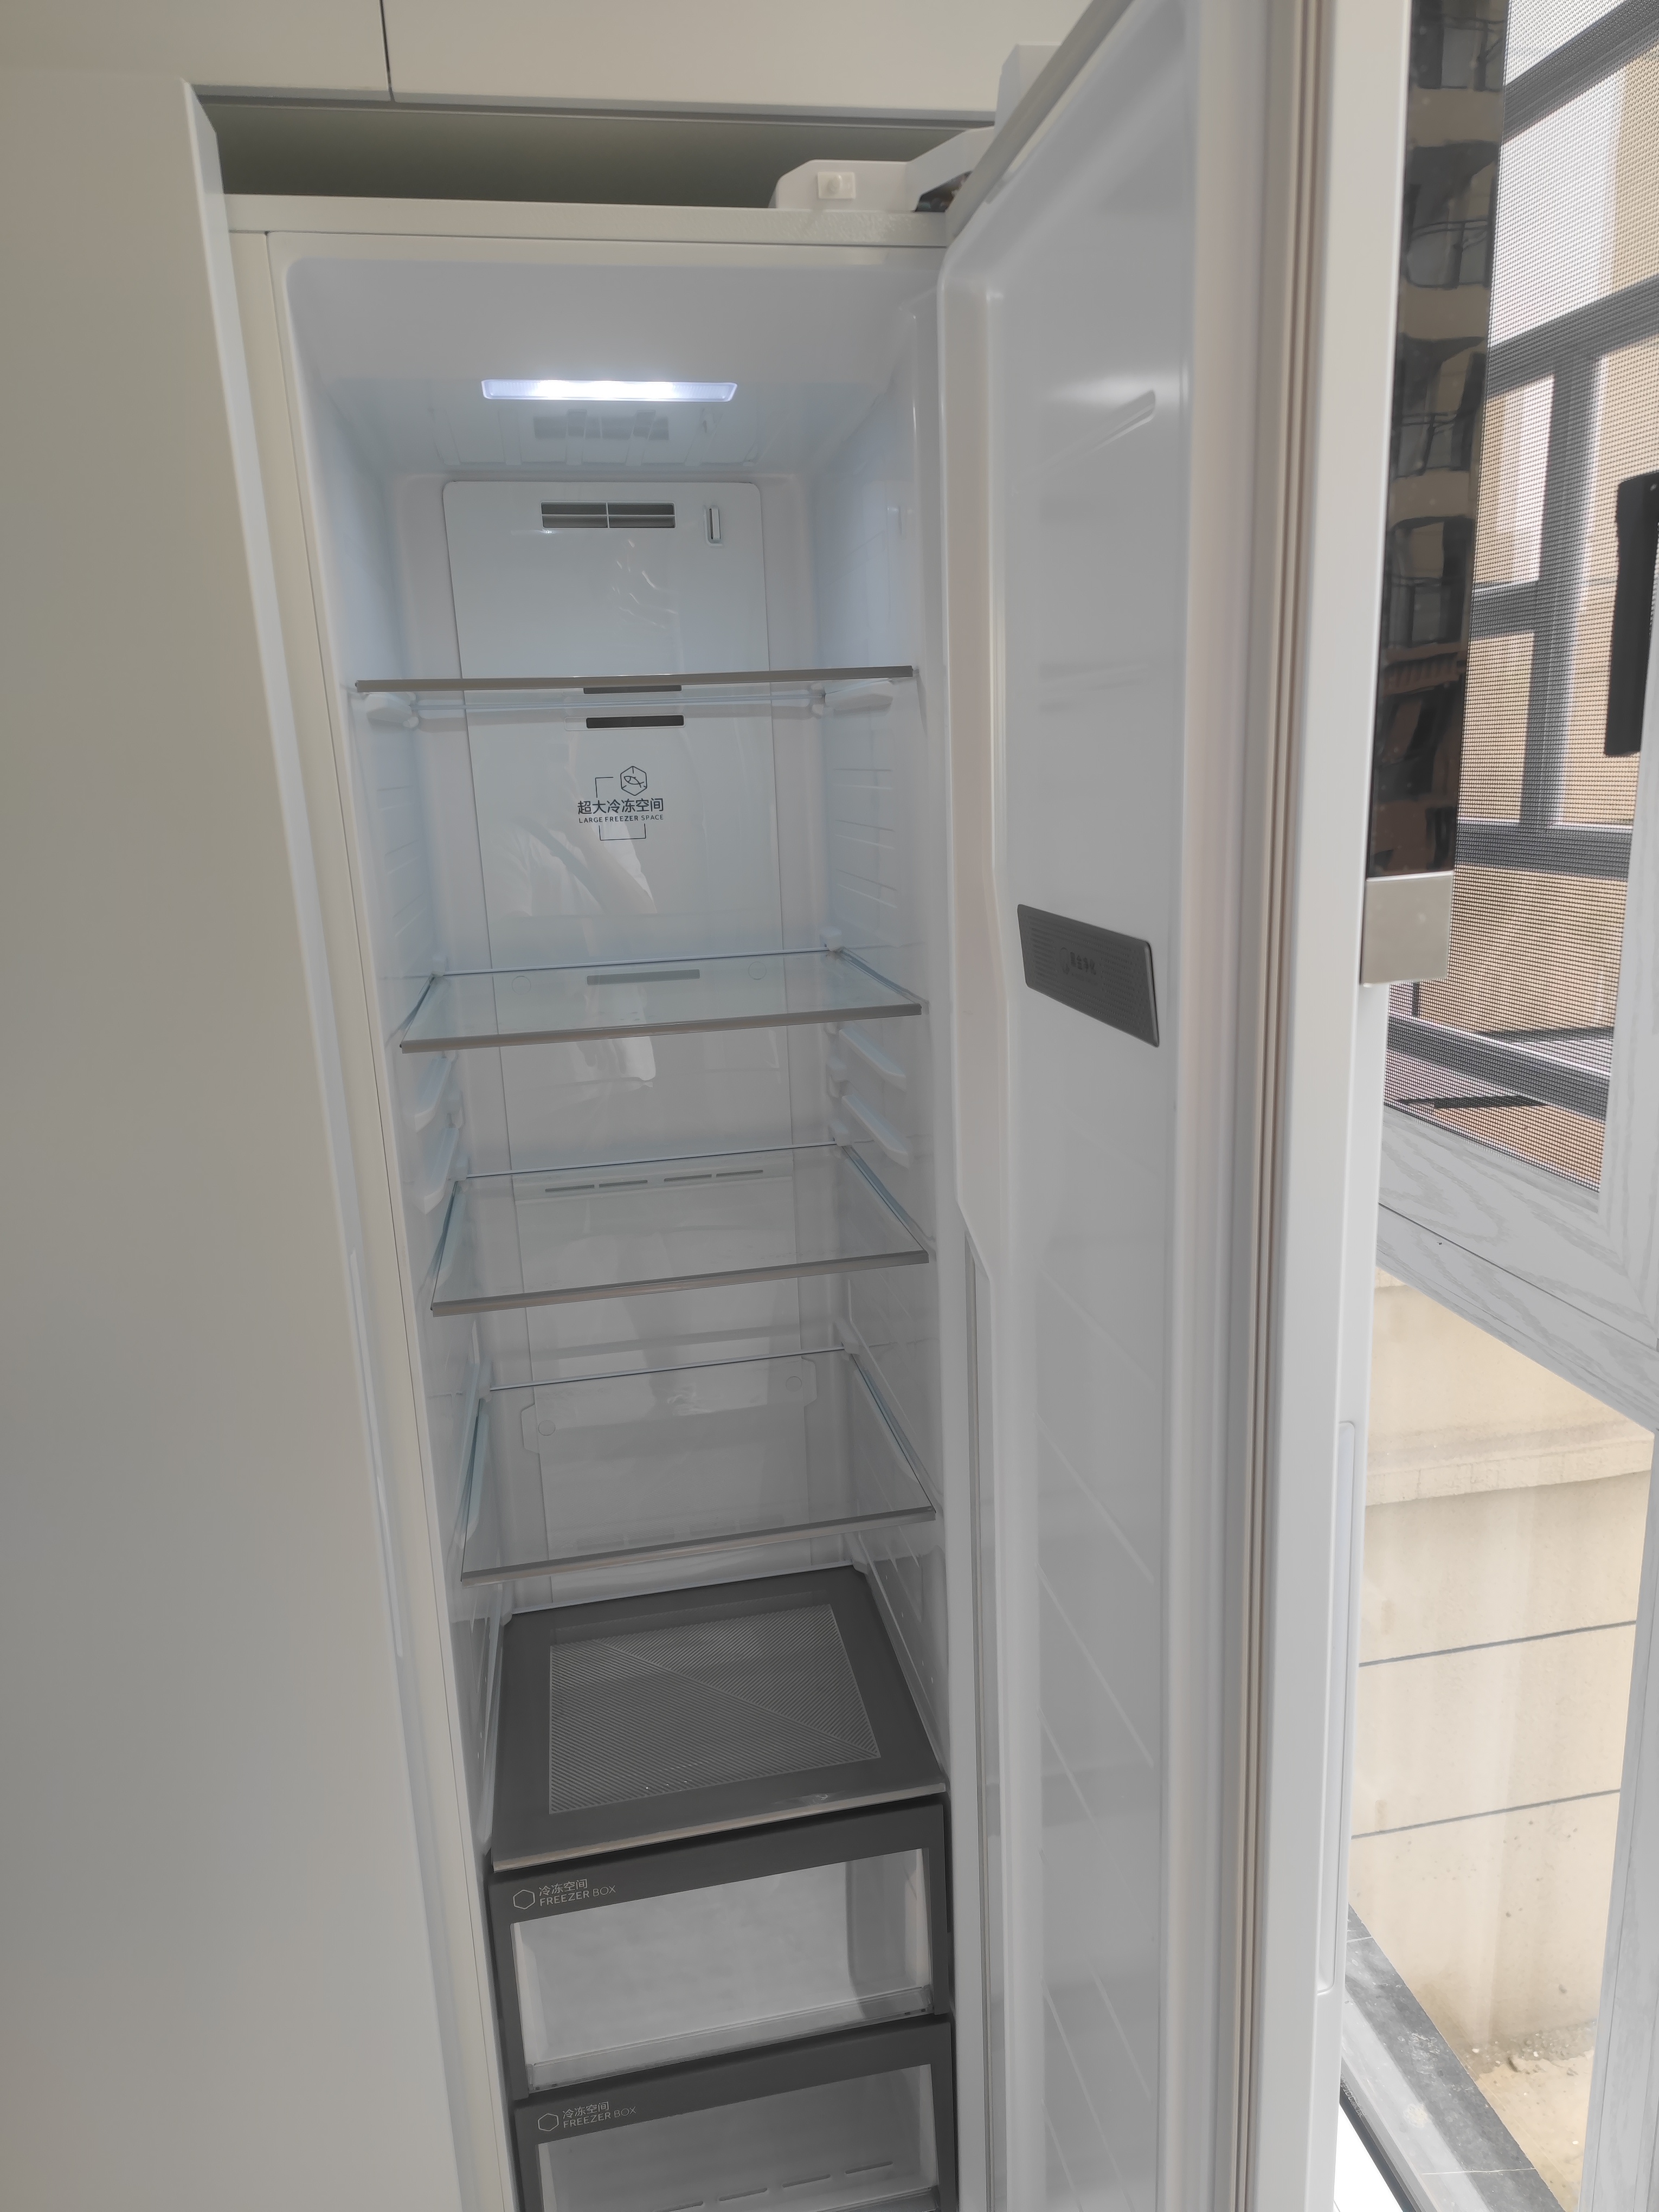 Haier/海尔 621升白色大容量对开门冰箱家用双开门电冰箱 大冷冻 EPP超净 BCD-621WLHSS95W9U1晒单图